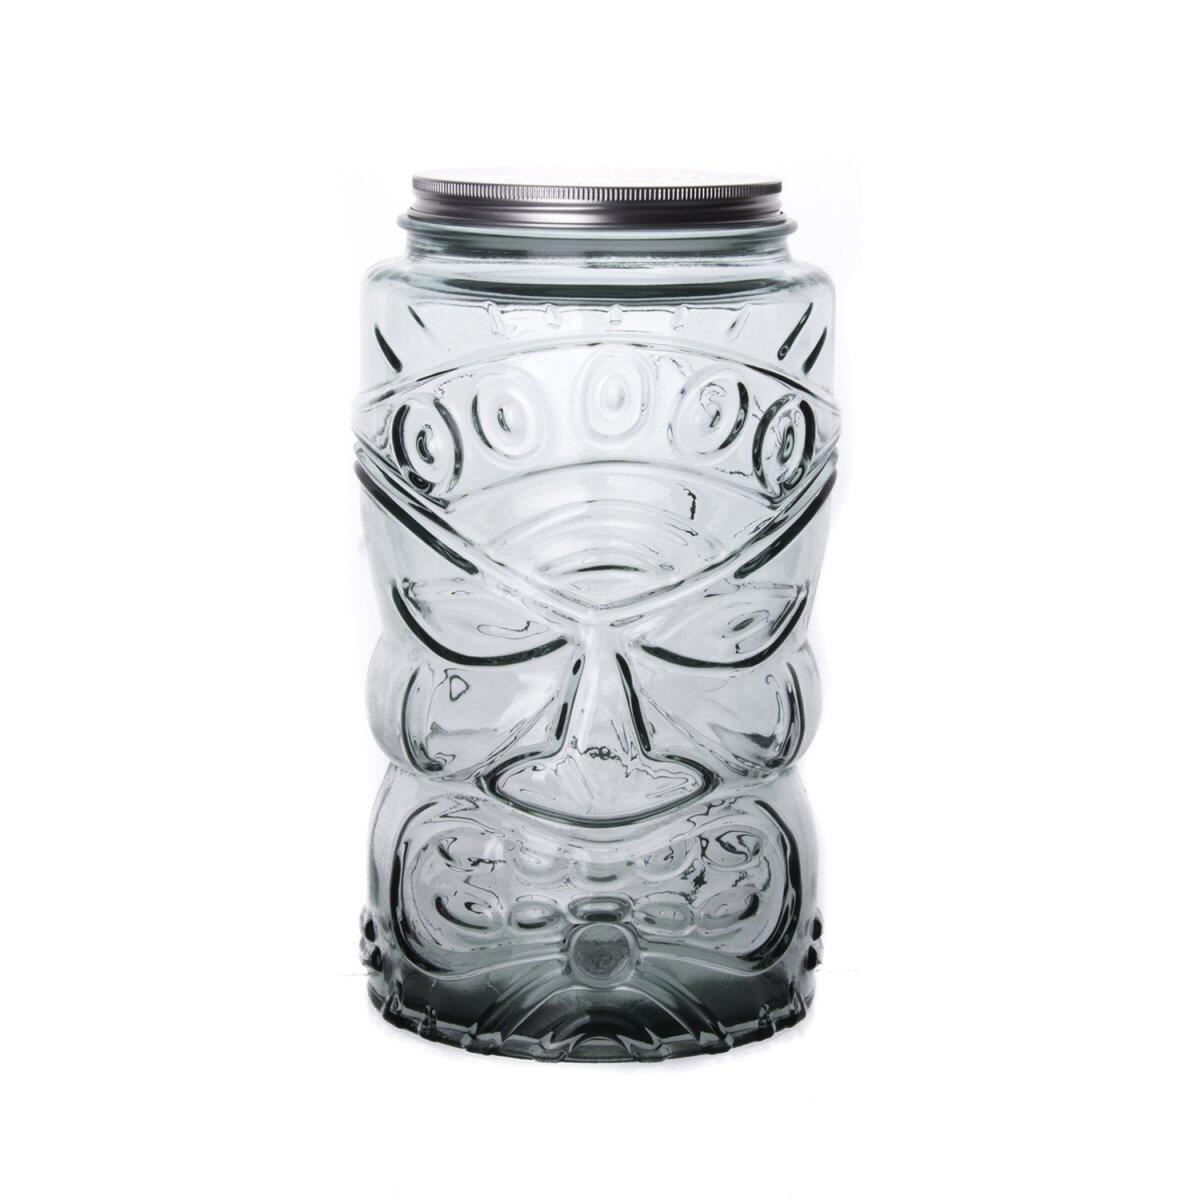 Sanmiguel Tarro Tiki Jar with Metal Lid 6 Liters